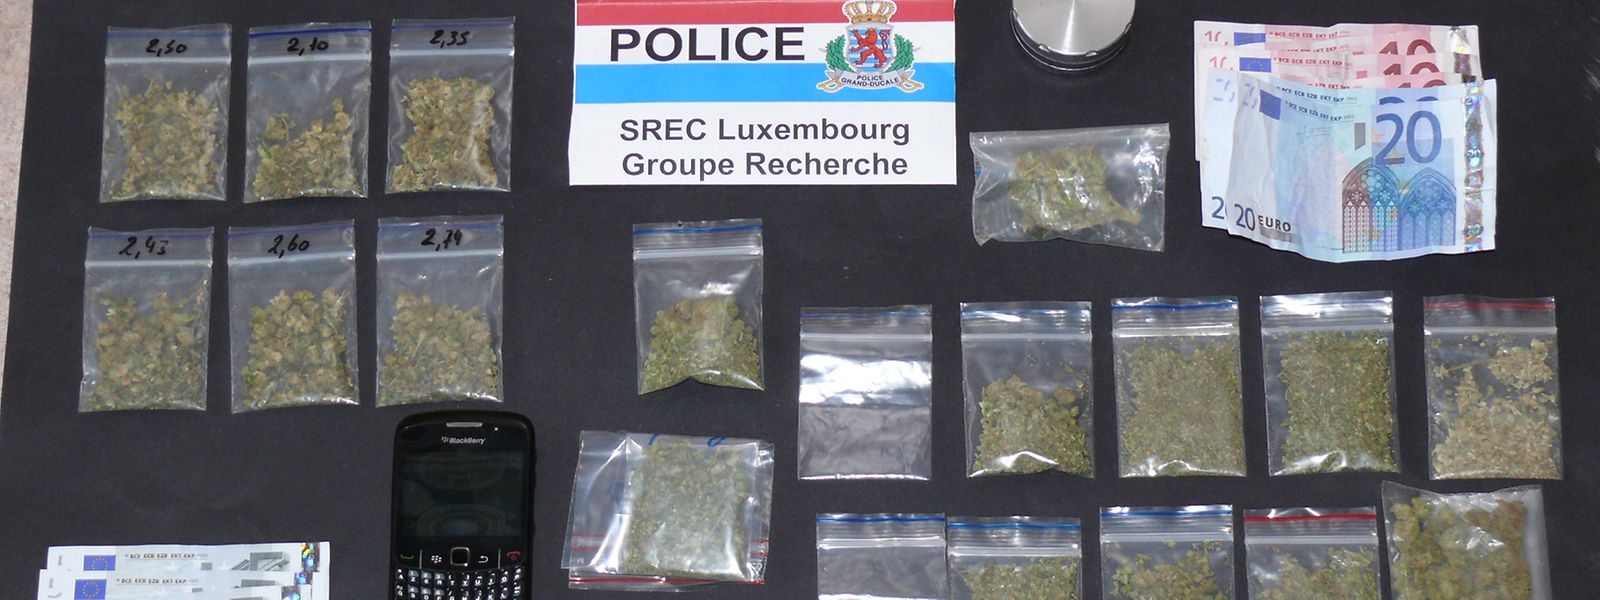 Les saisies de cannabis ont représenté 70% du volume de drogues intercepté au Luxembourg en 2019. Le nombre et la quantité de cannabis saisi sont à la hausse (un pic de 371 kg a été atteint en 2019)